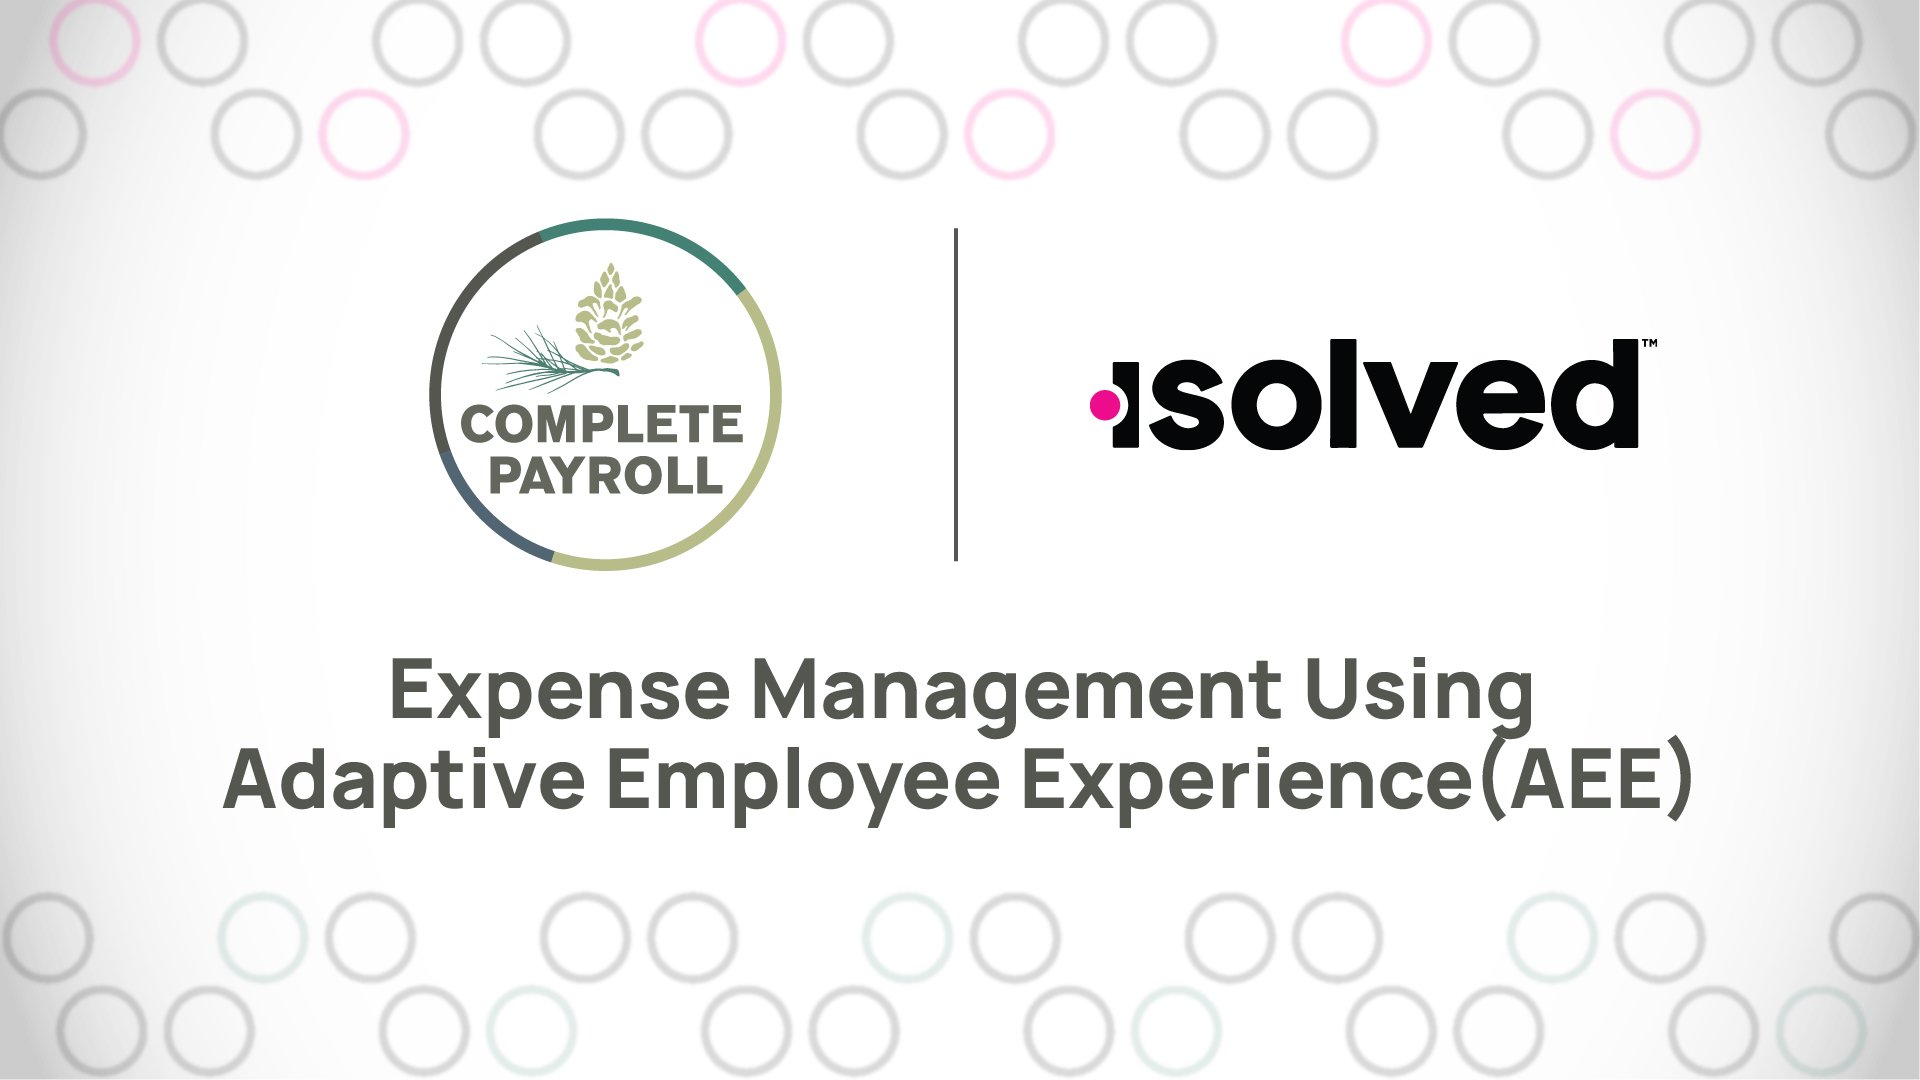 Expense Management Using Adaptive Employee Experience (AEE)